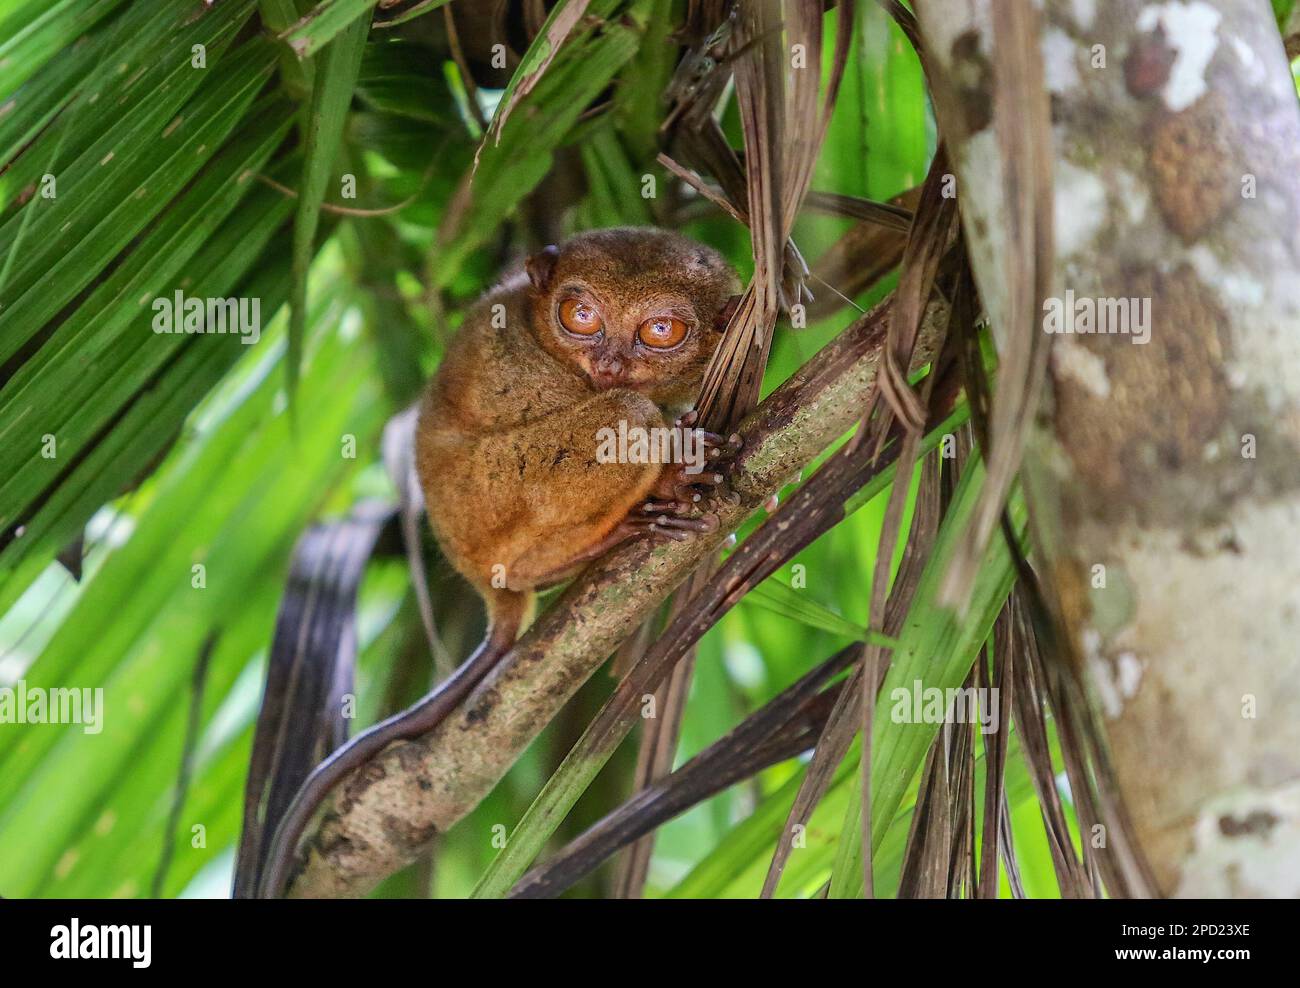 Philippin tarsier : un primate timide se suicide lorsqu'il est stressé en captivité. Île de Bohol, faune sauvage des Philippines, protection des espèces menacées Banque D'Images